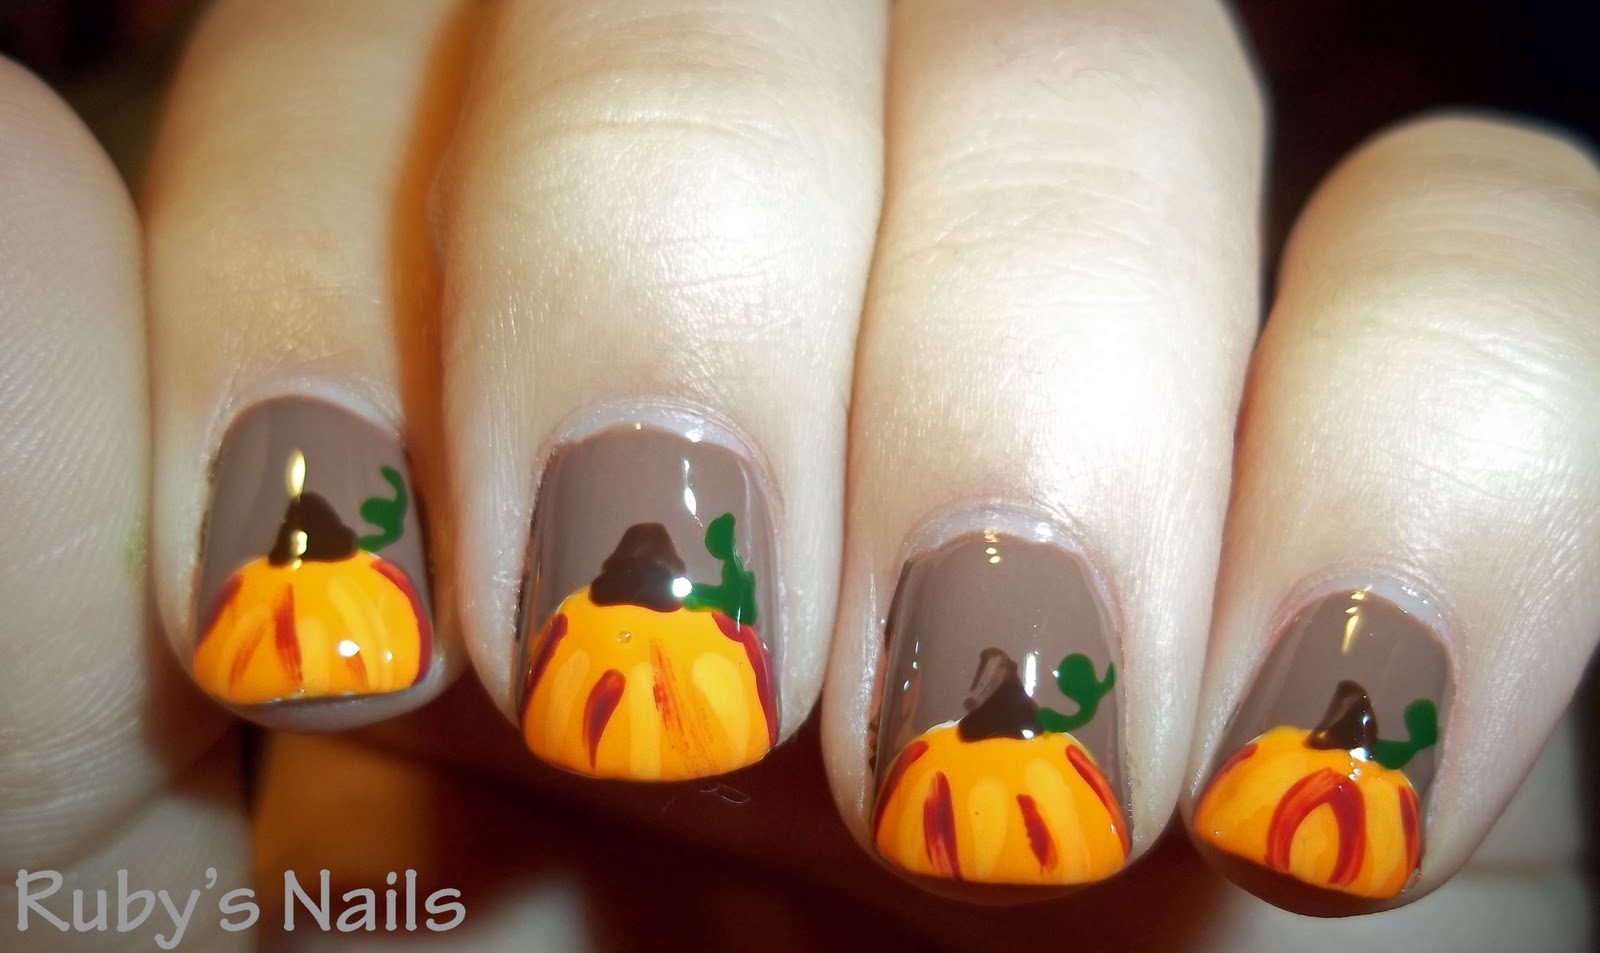 Ruby's Nails: Pumpkin nails